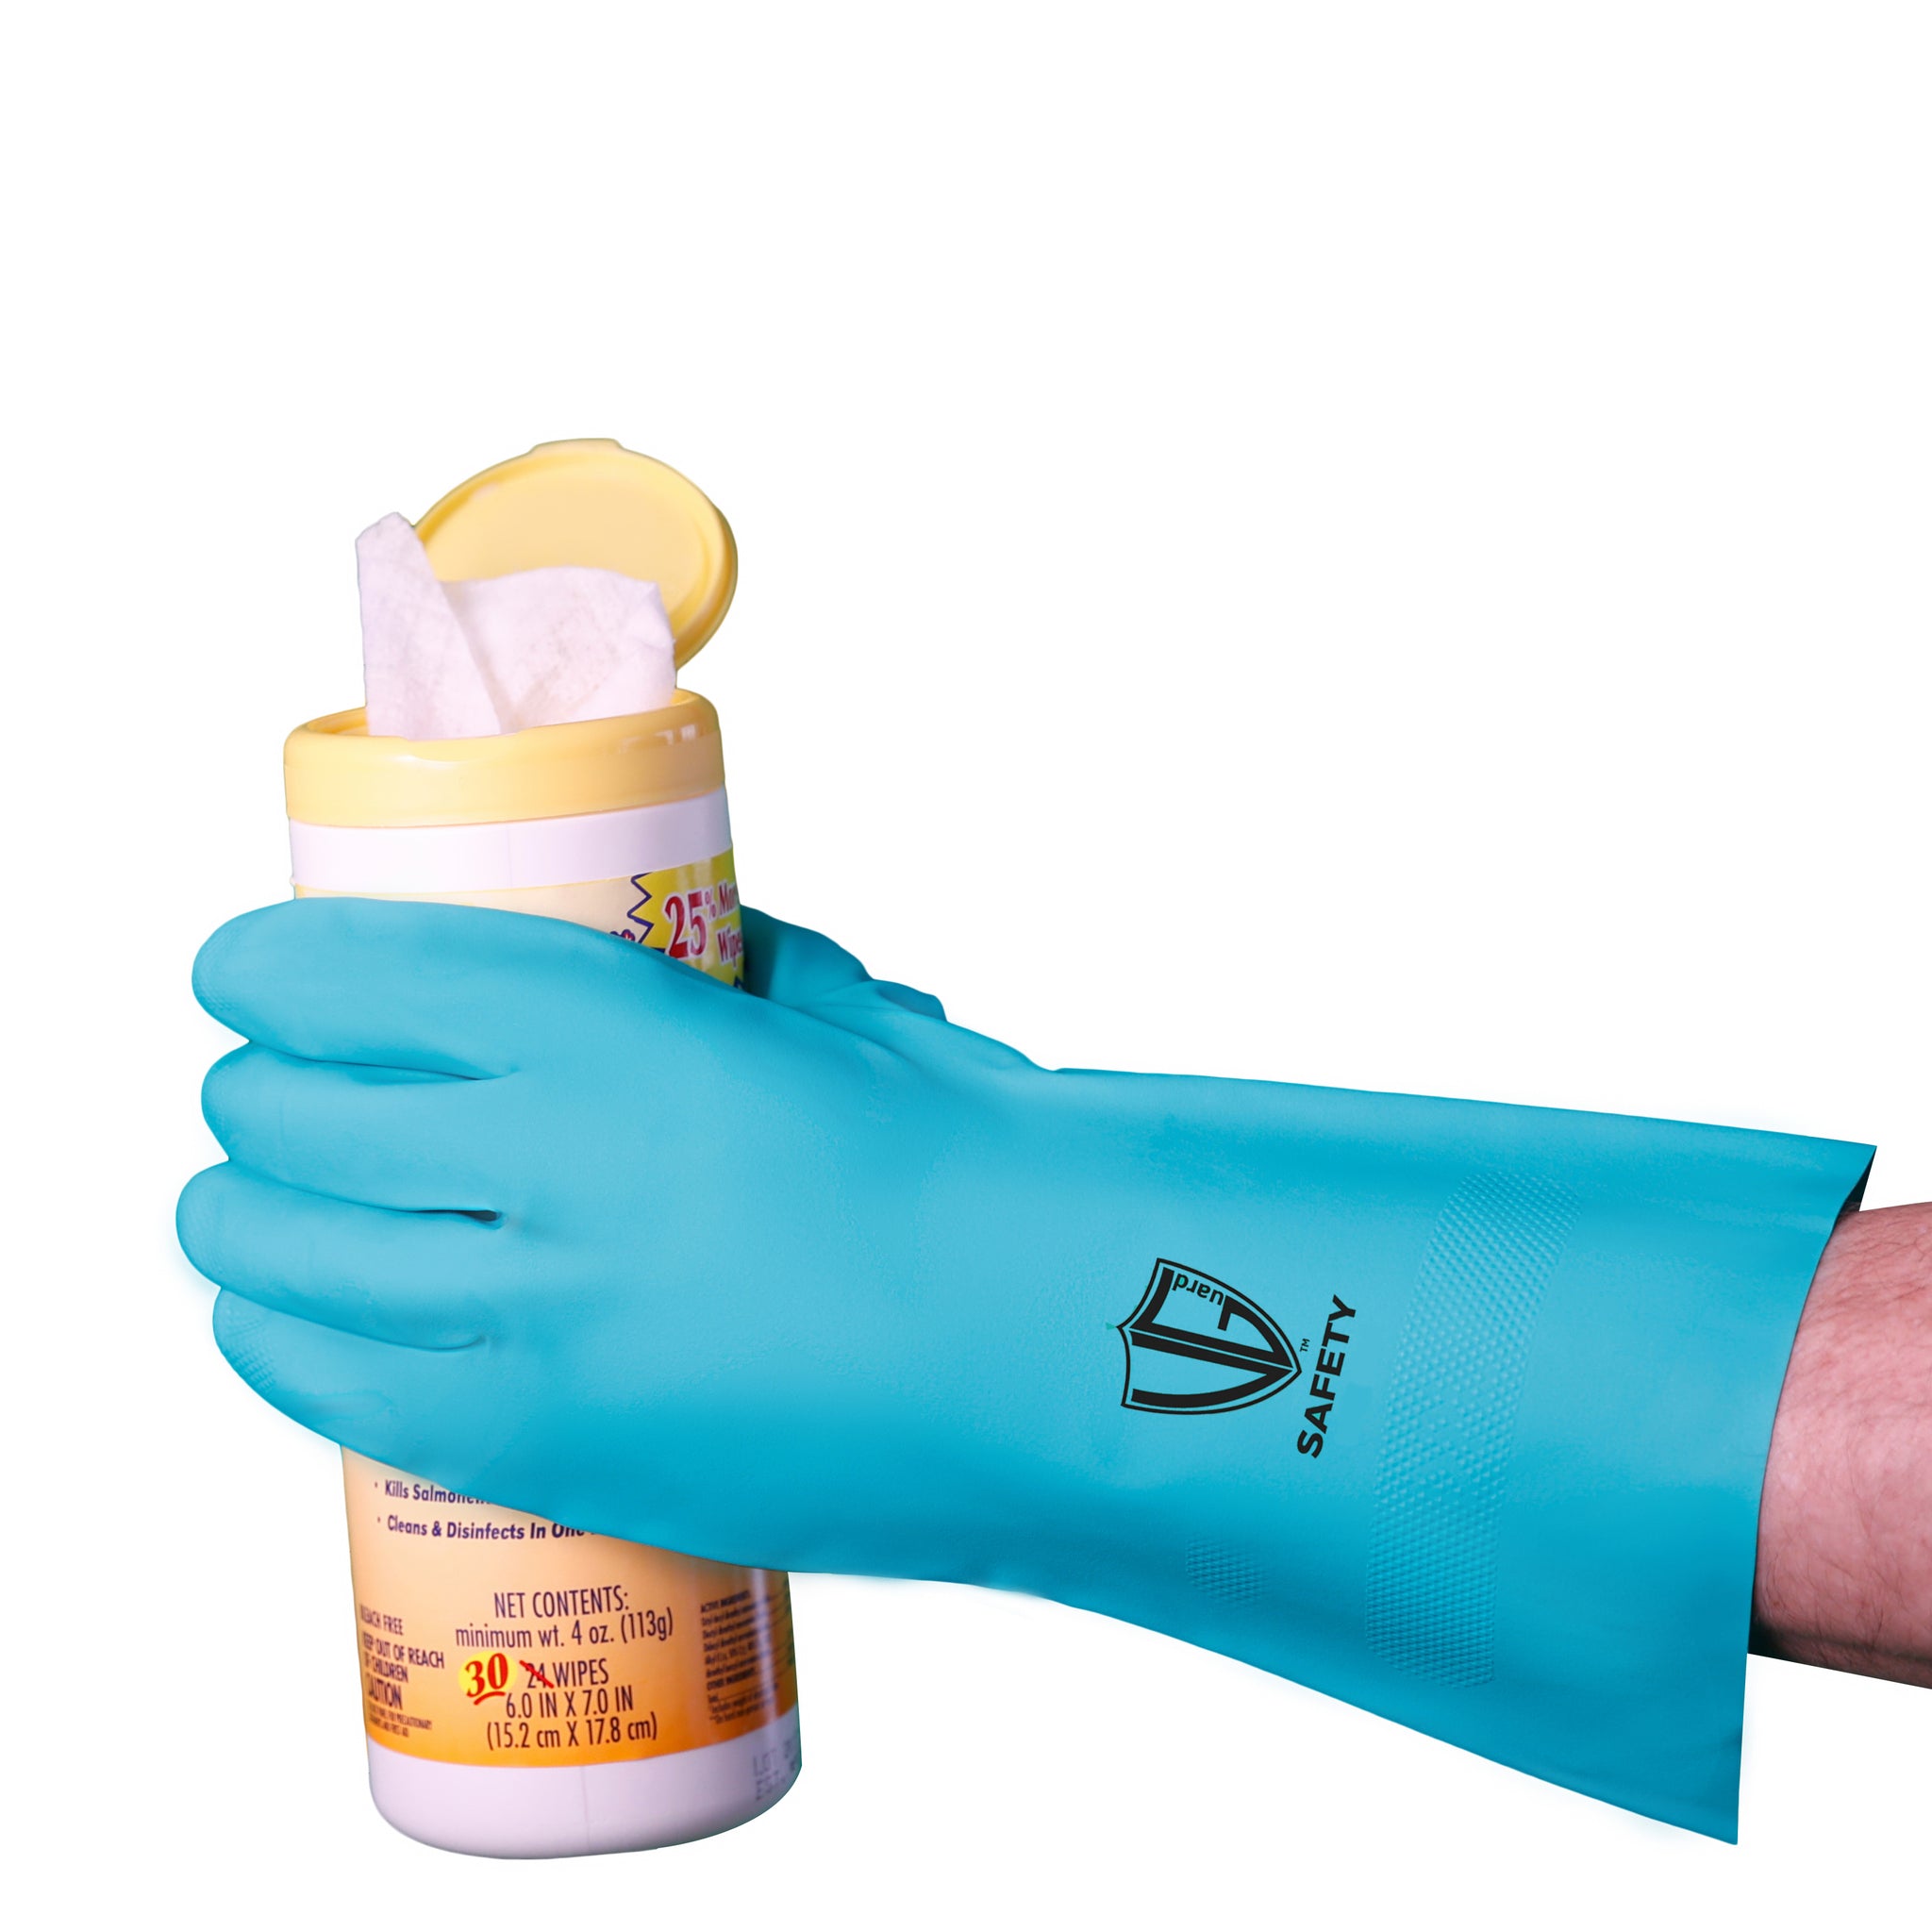 C14A2 Gloves